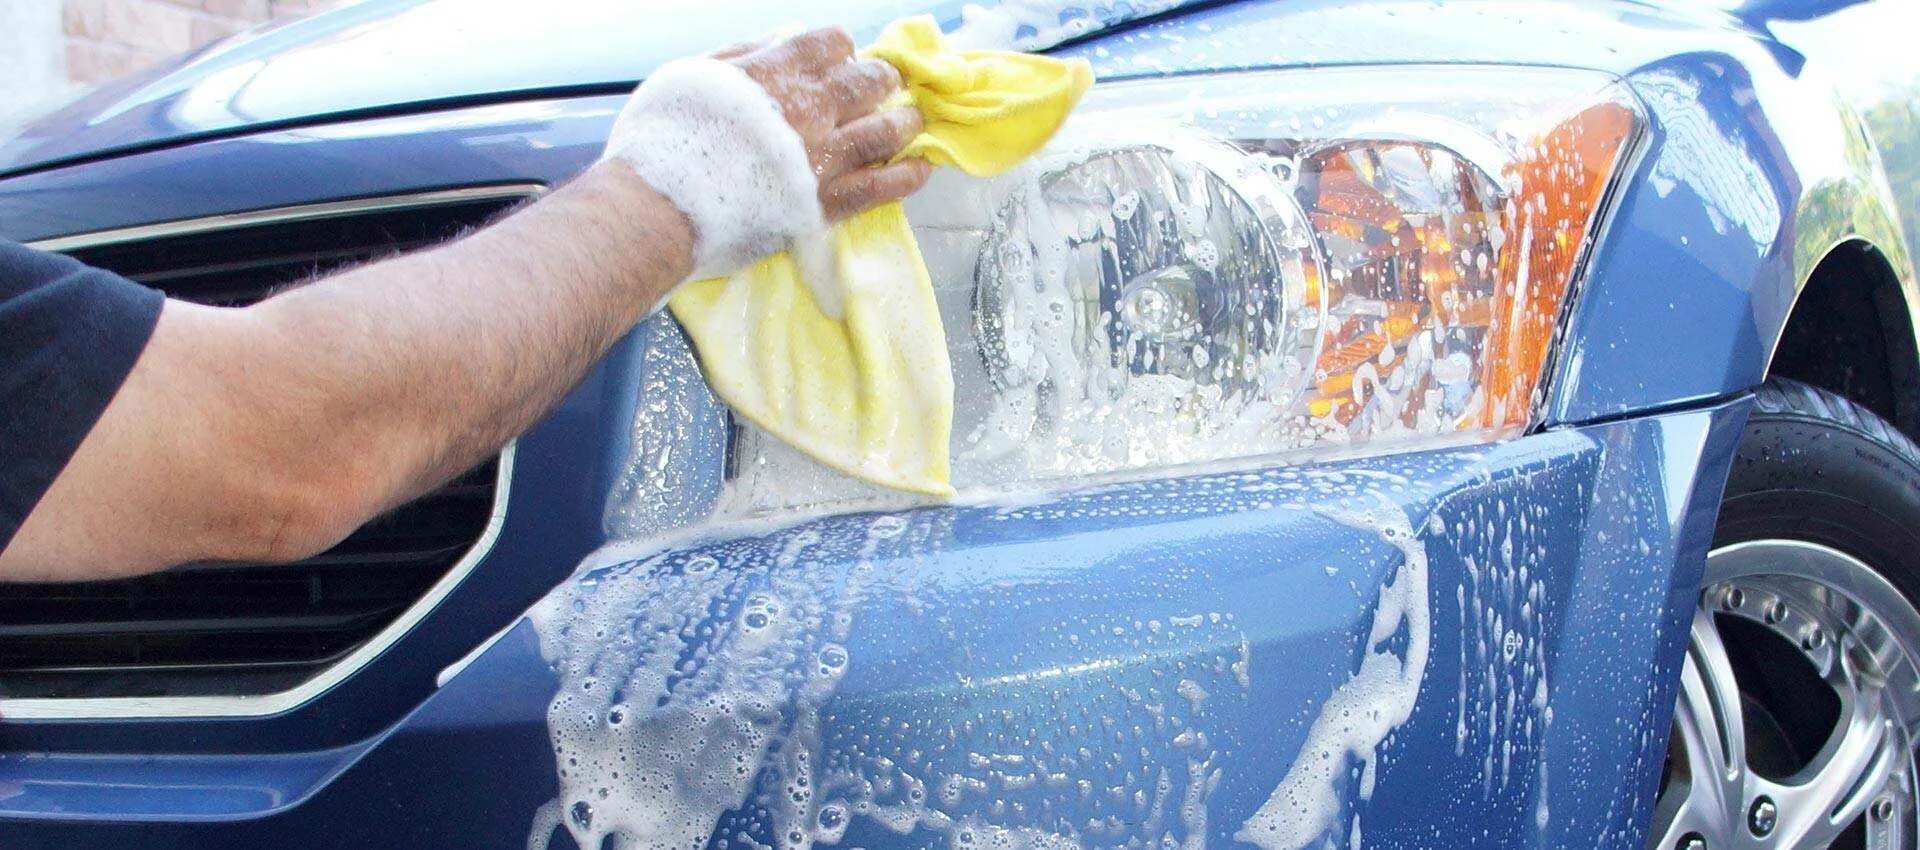 Car Wash автомойка. Губка для мойки автомобиля. Мытье автомобиля. Самостоятельная мойка автомобиля.